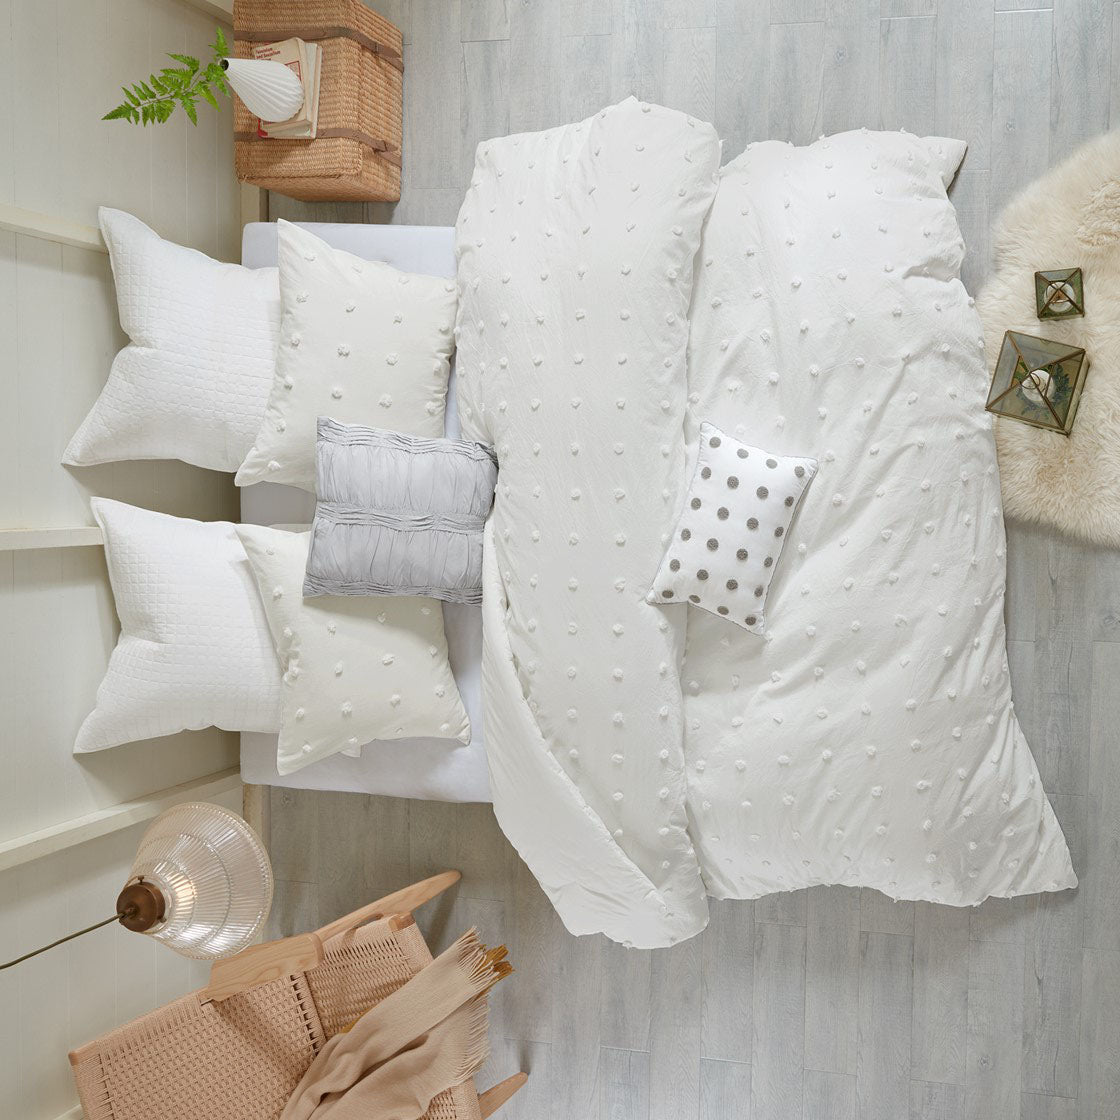 Bedding Comforter Set Sale - Shop Online & Save On Top Rated Bedding Set Brands at ExpressHomeDirect.com